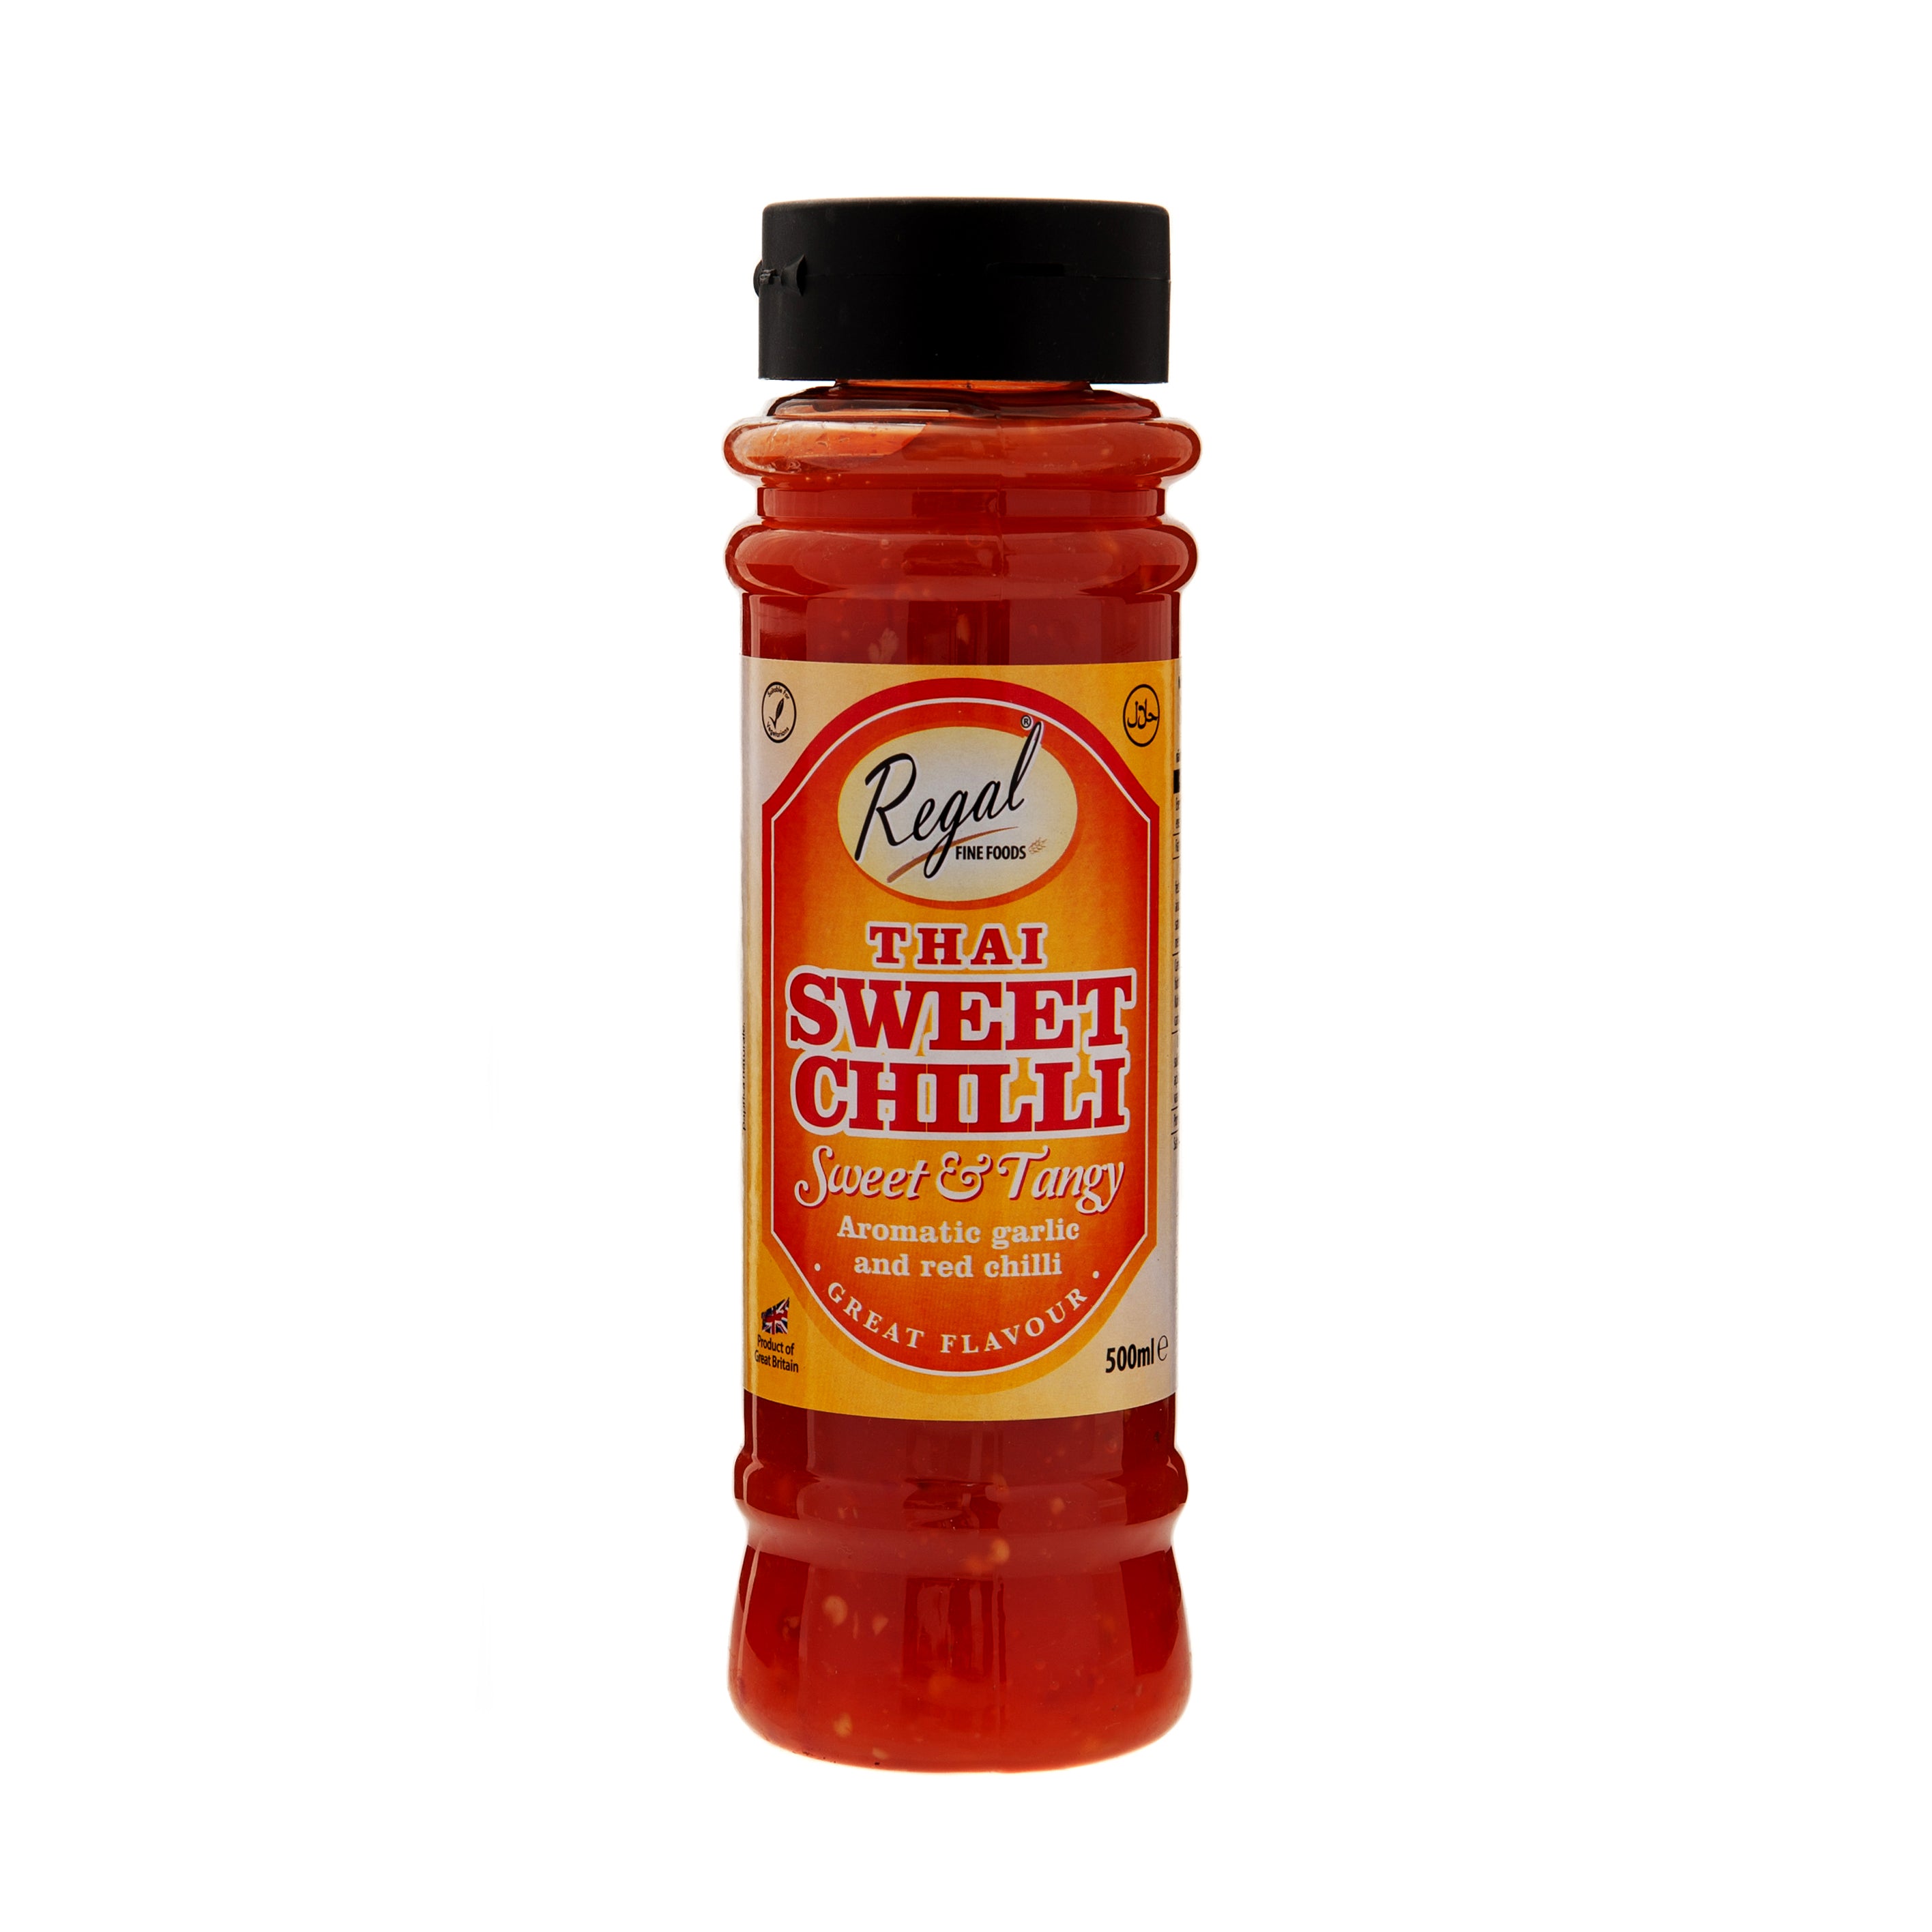 Regal Thai Sweet Chilli Sauce - SaveCo Cash & Carry